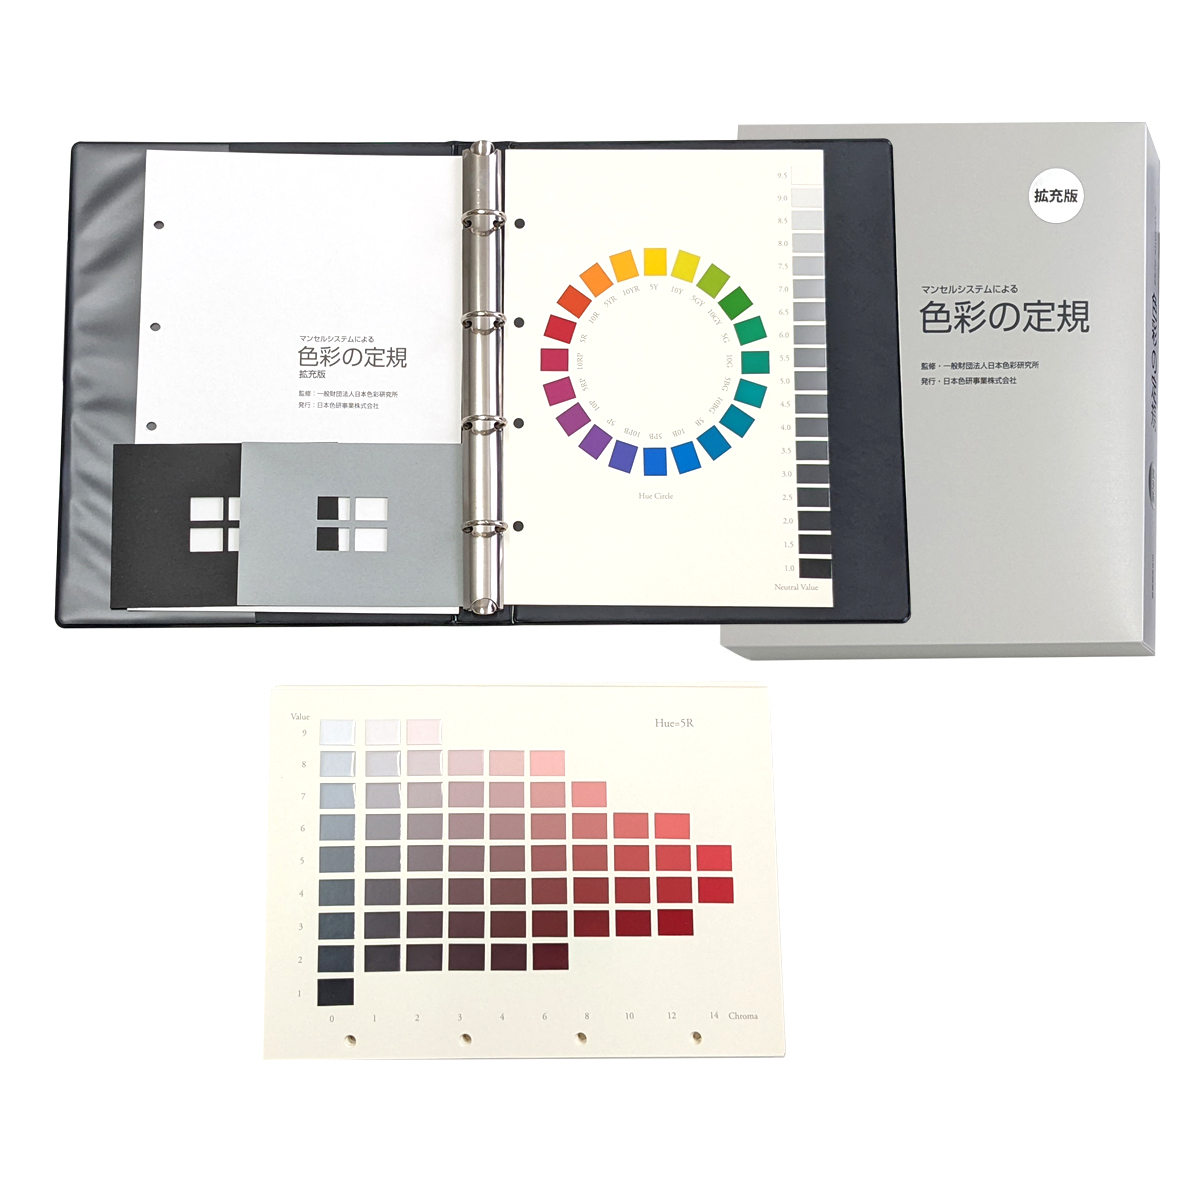 約1 090色の色見本帳としての利用も マンセルシステムによる 色彩の定規 拡充版 25チャート B5判 バインダー綴じ 半額 直輸入品激安 日本色研